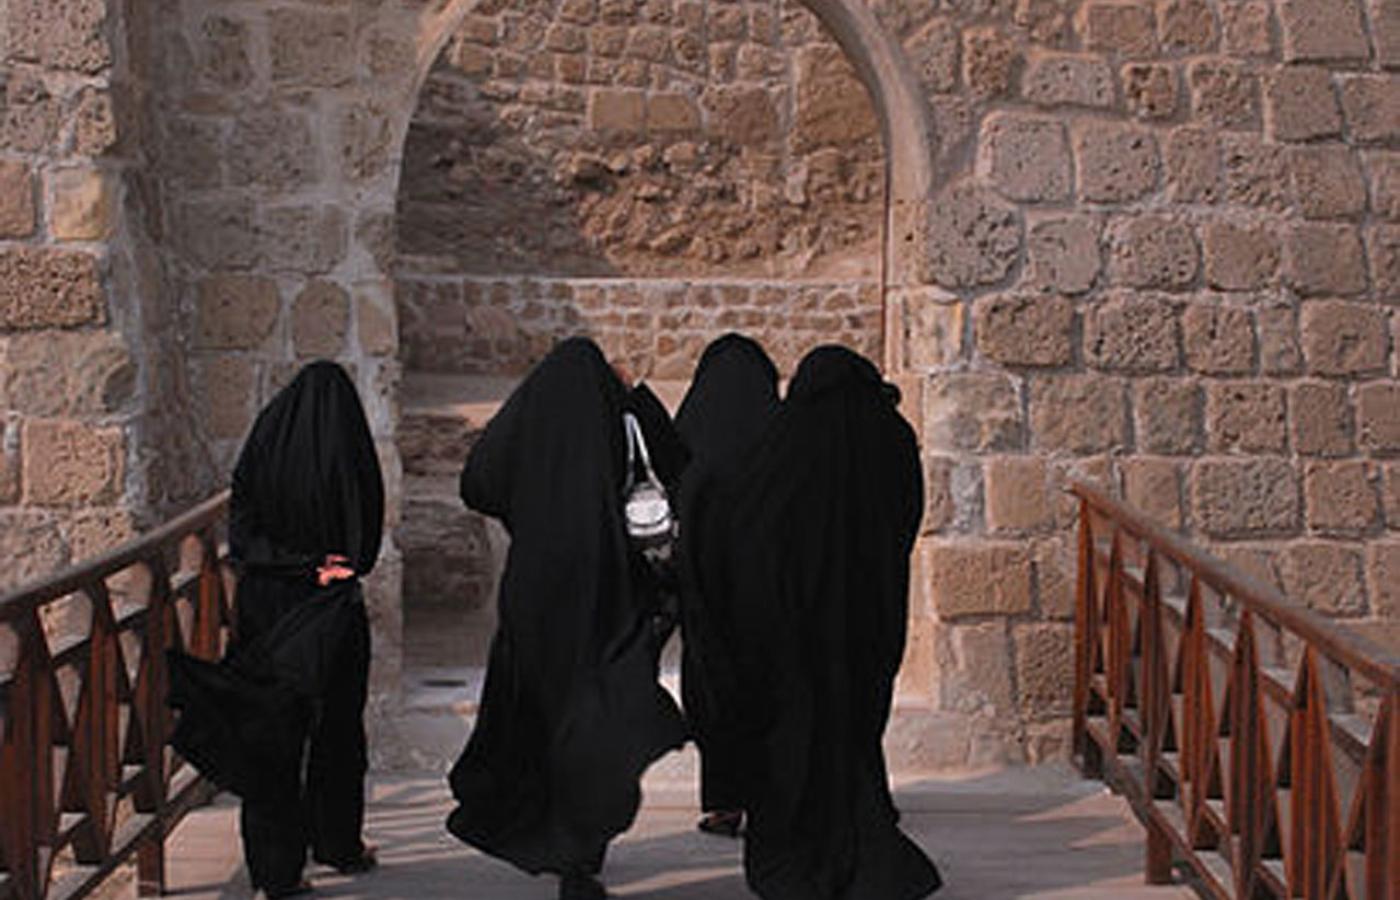 Kobiety w Arabii Saudyjskiej zyskują kolejne prawa. Bardzo powoli.